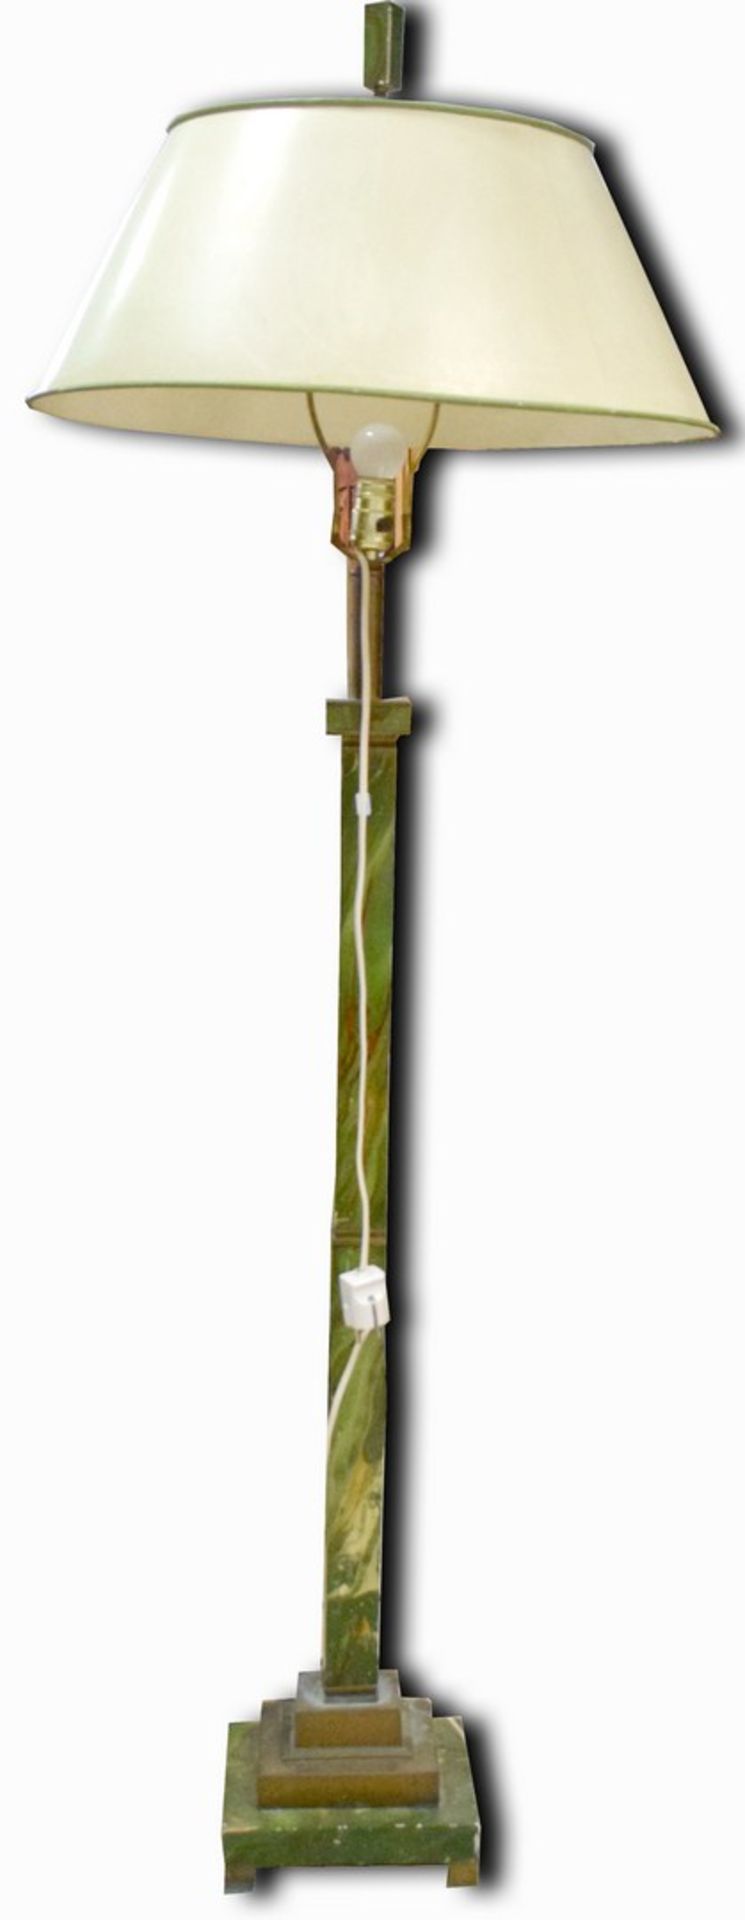 Stehlampe1-lichtig, Fuß Holz und Schaft Holz, grün/rot gefasst, mit Messing, runder Schirm, H 154